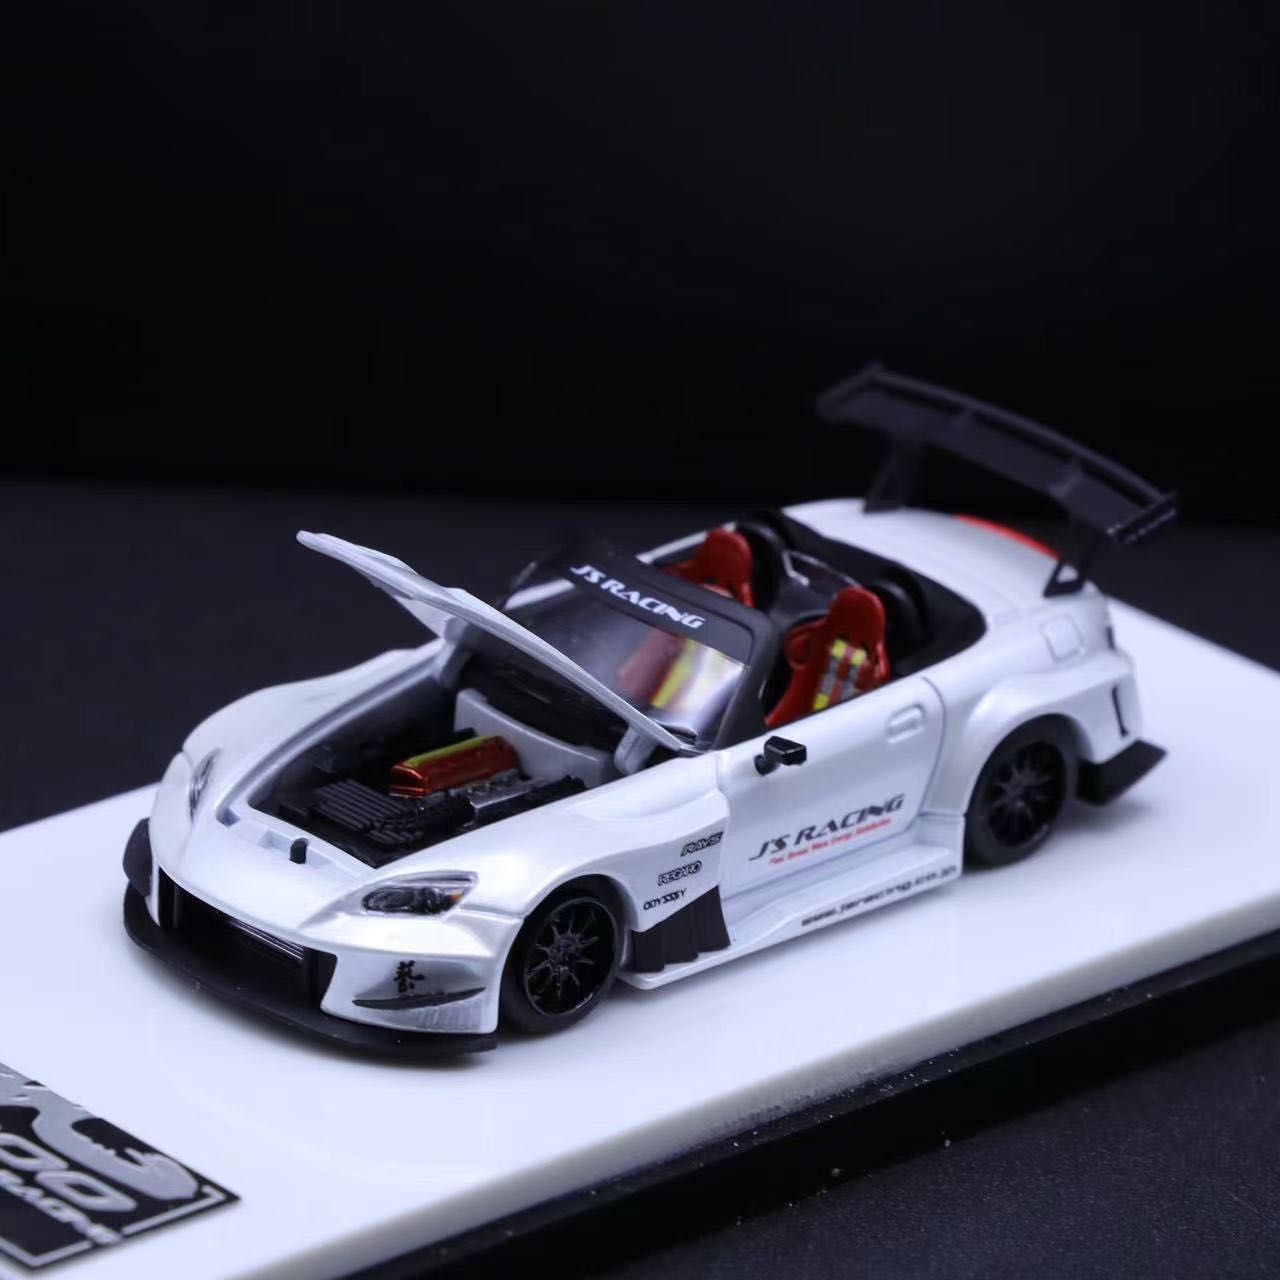 Micro Turbo 1/64 J's Racing Honda S2000 in White